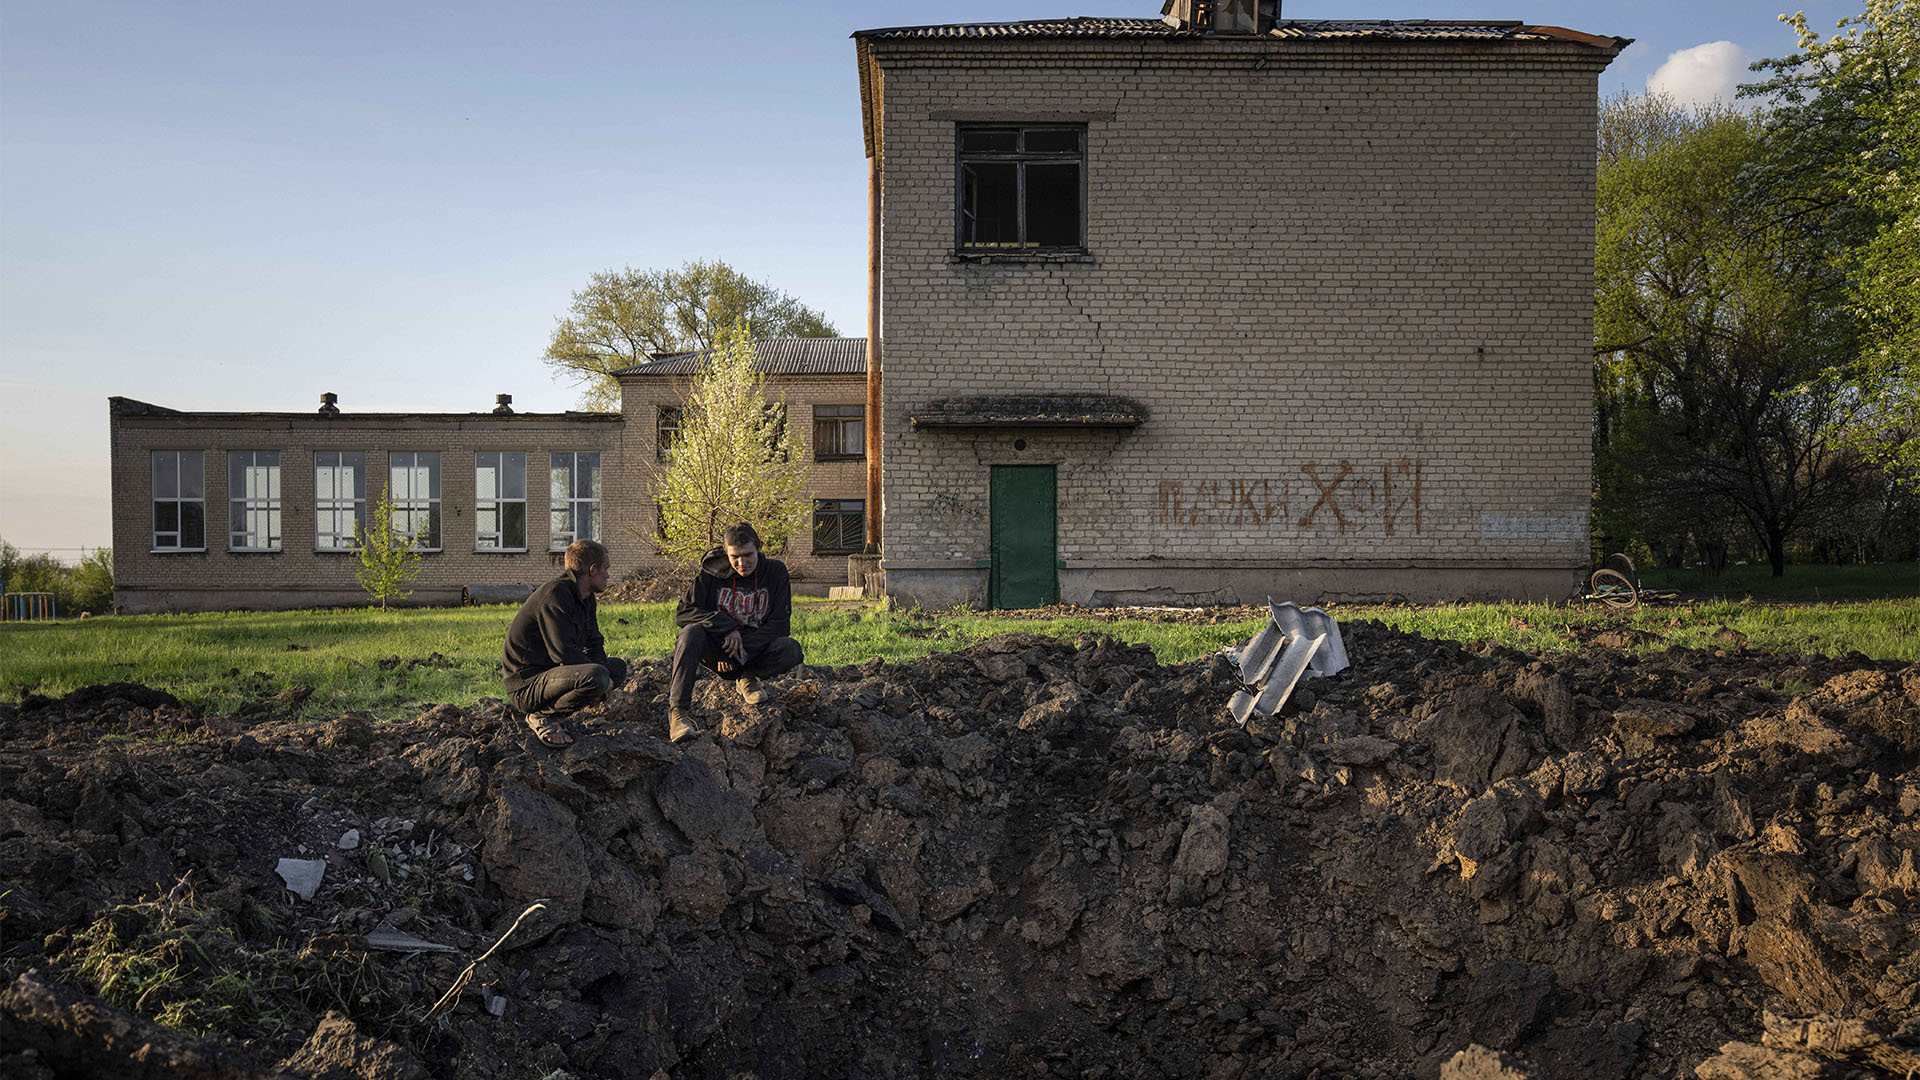 ARCHIVO - La gente mira un cráter creado por un ataque con cohetes rusos en el patio de una escuela en Dobropillya, región de Donetsk, este de Ucrania, el jueves 28 de abril de 2022. A pesar del daño generalizado y la destrucción de la infraestructura educativa, los expertos en crímenes de guerra dicen que demuestra la intención para las escuelas individuales es difícil. (Foto AP/Evgeniy Maloletka, archivo)